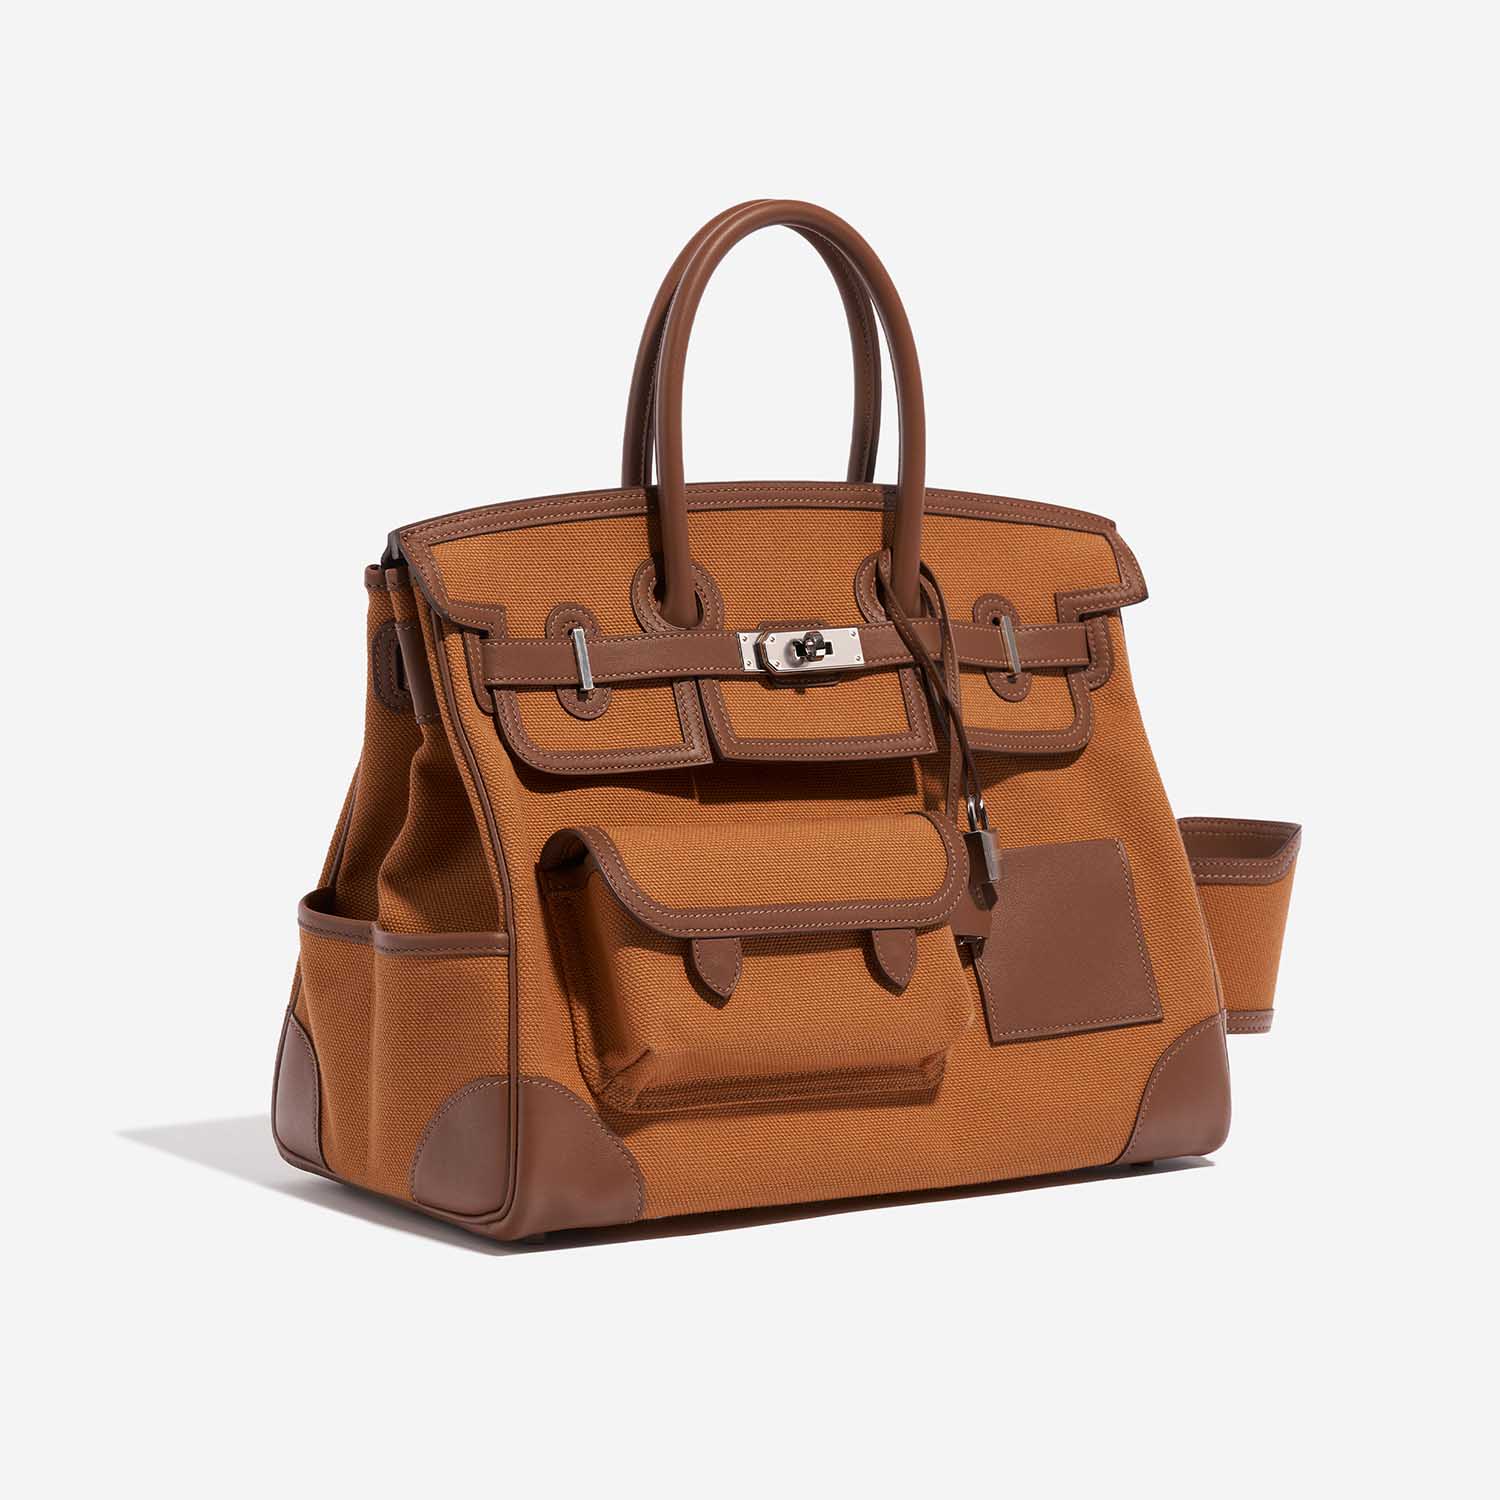 Sac Hermès d'occasion Birkin Cargo 35 Swift / Toile Goeland Marron / Gold Brown Side Front | Vendez votre sac de créateur sur Saclab.com